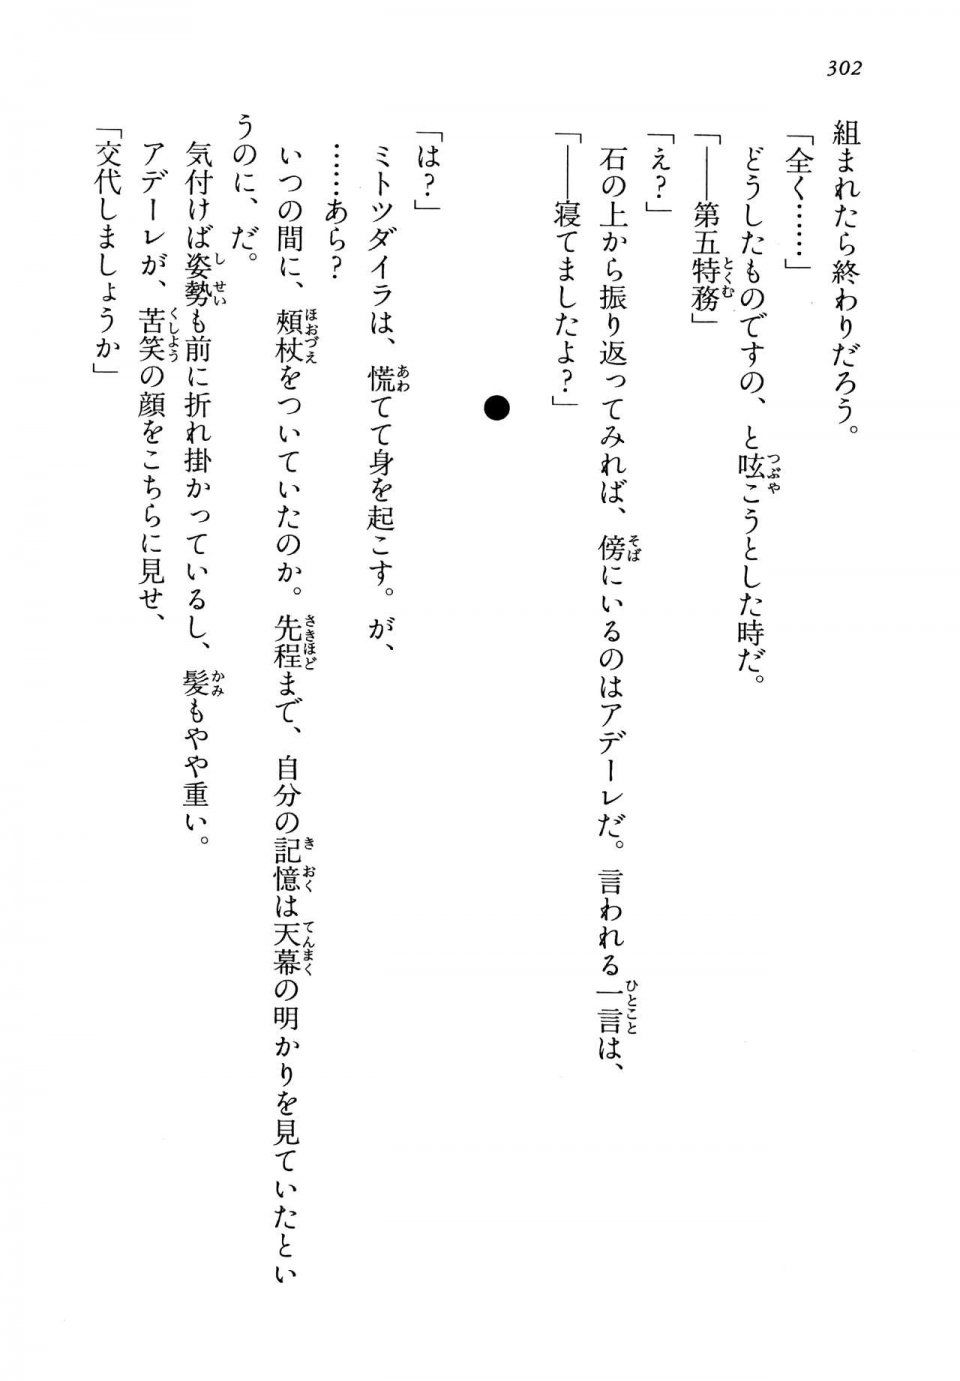 Kyoukai Senjou no Horizon LN Vol 13(6A) - Photo #302